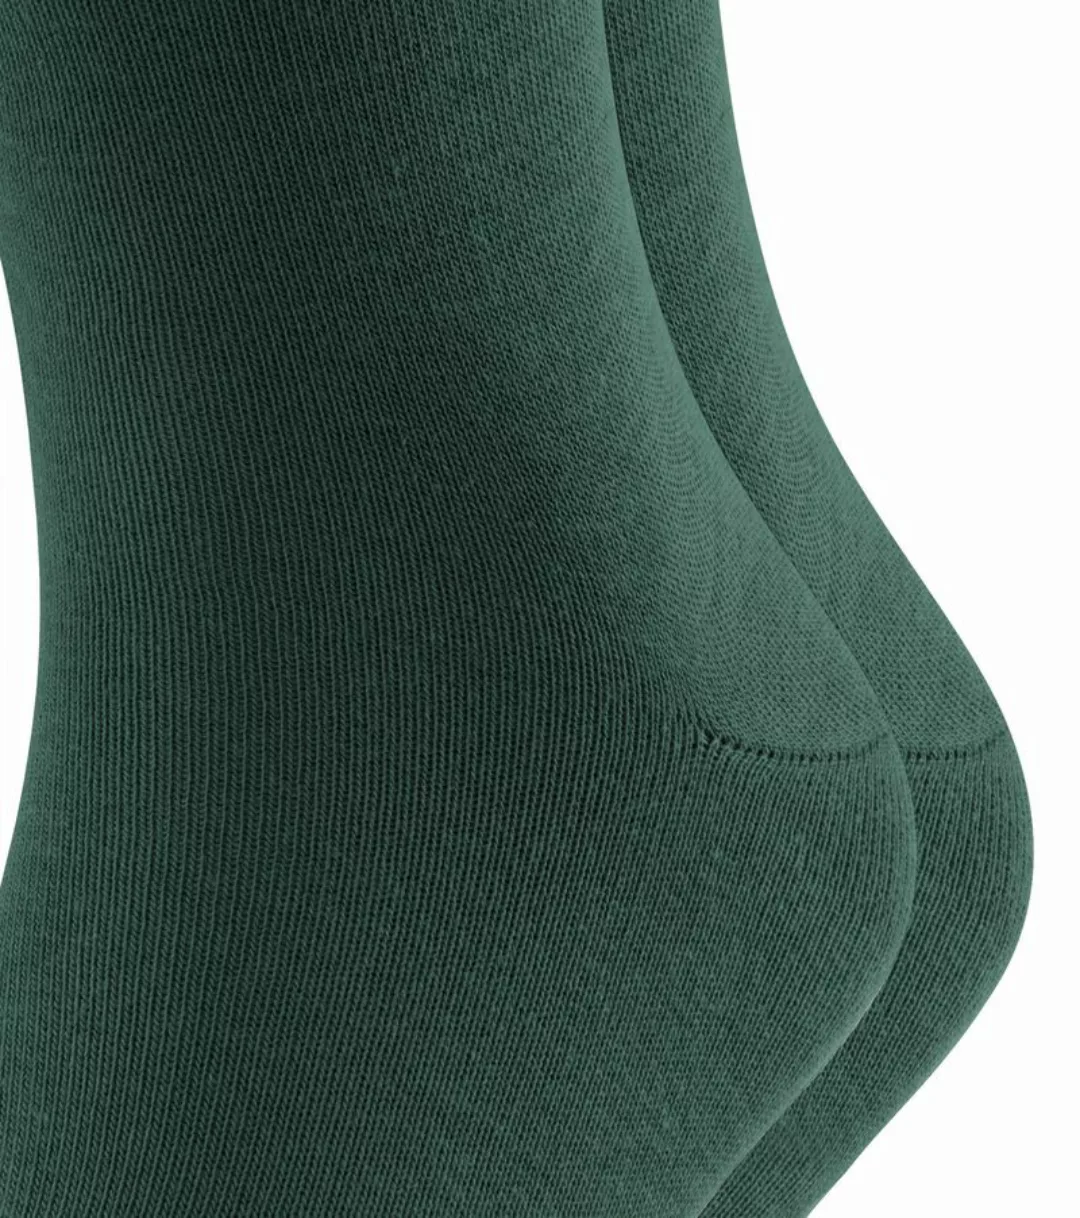 Falke Happy Socken 2-Pack Dunkelgrün - Größe 43-46 günstig online kaufen